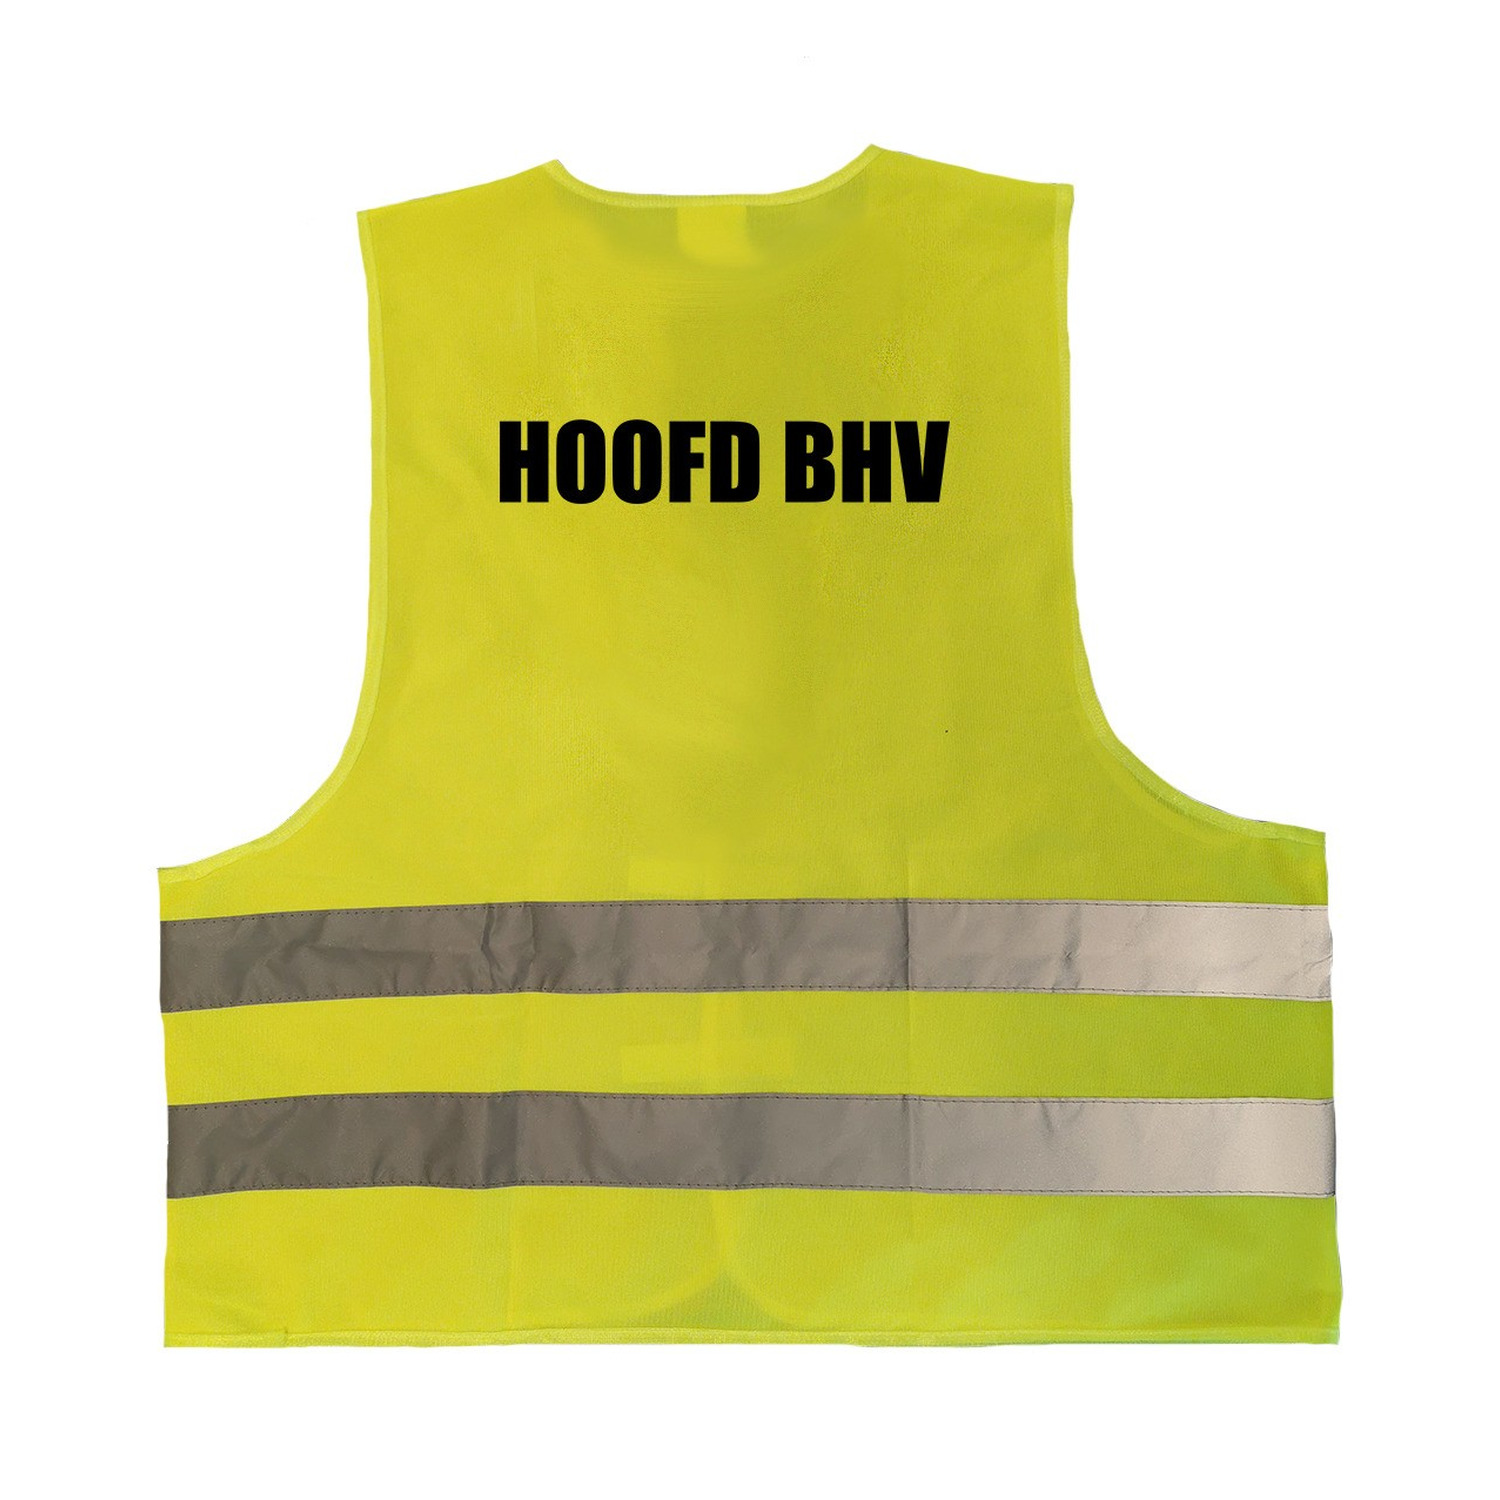 Hoofd BHV vestje - hesje geel met reflecterende strepen voor volwassenen